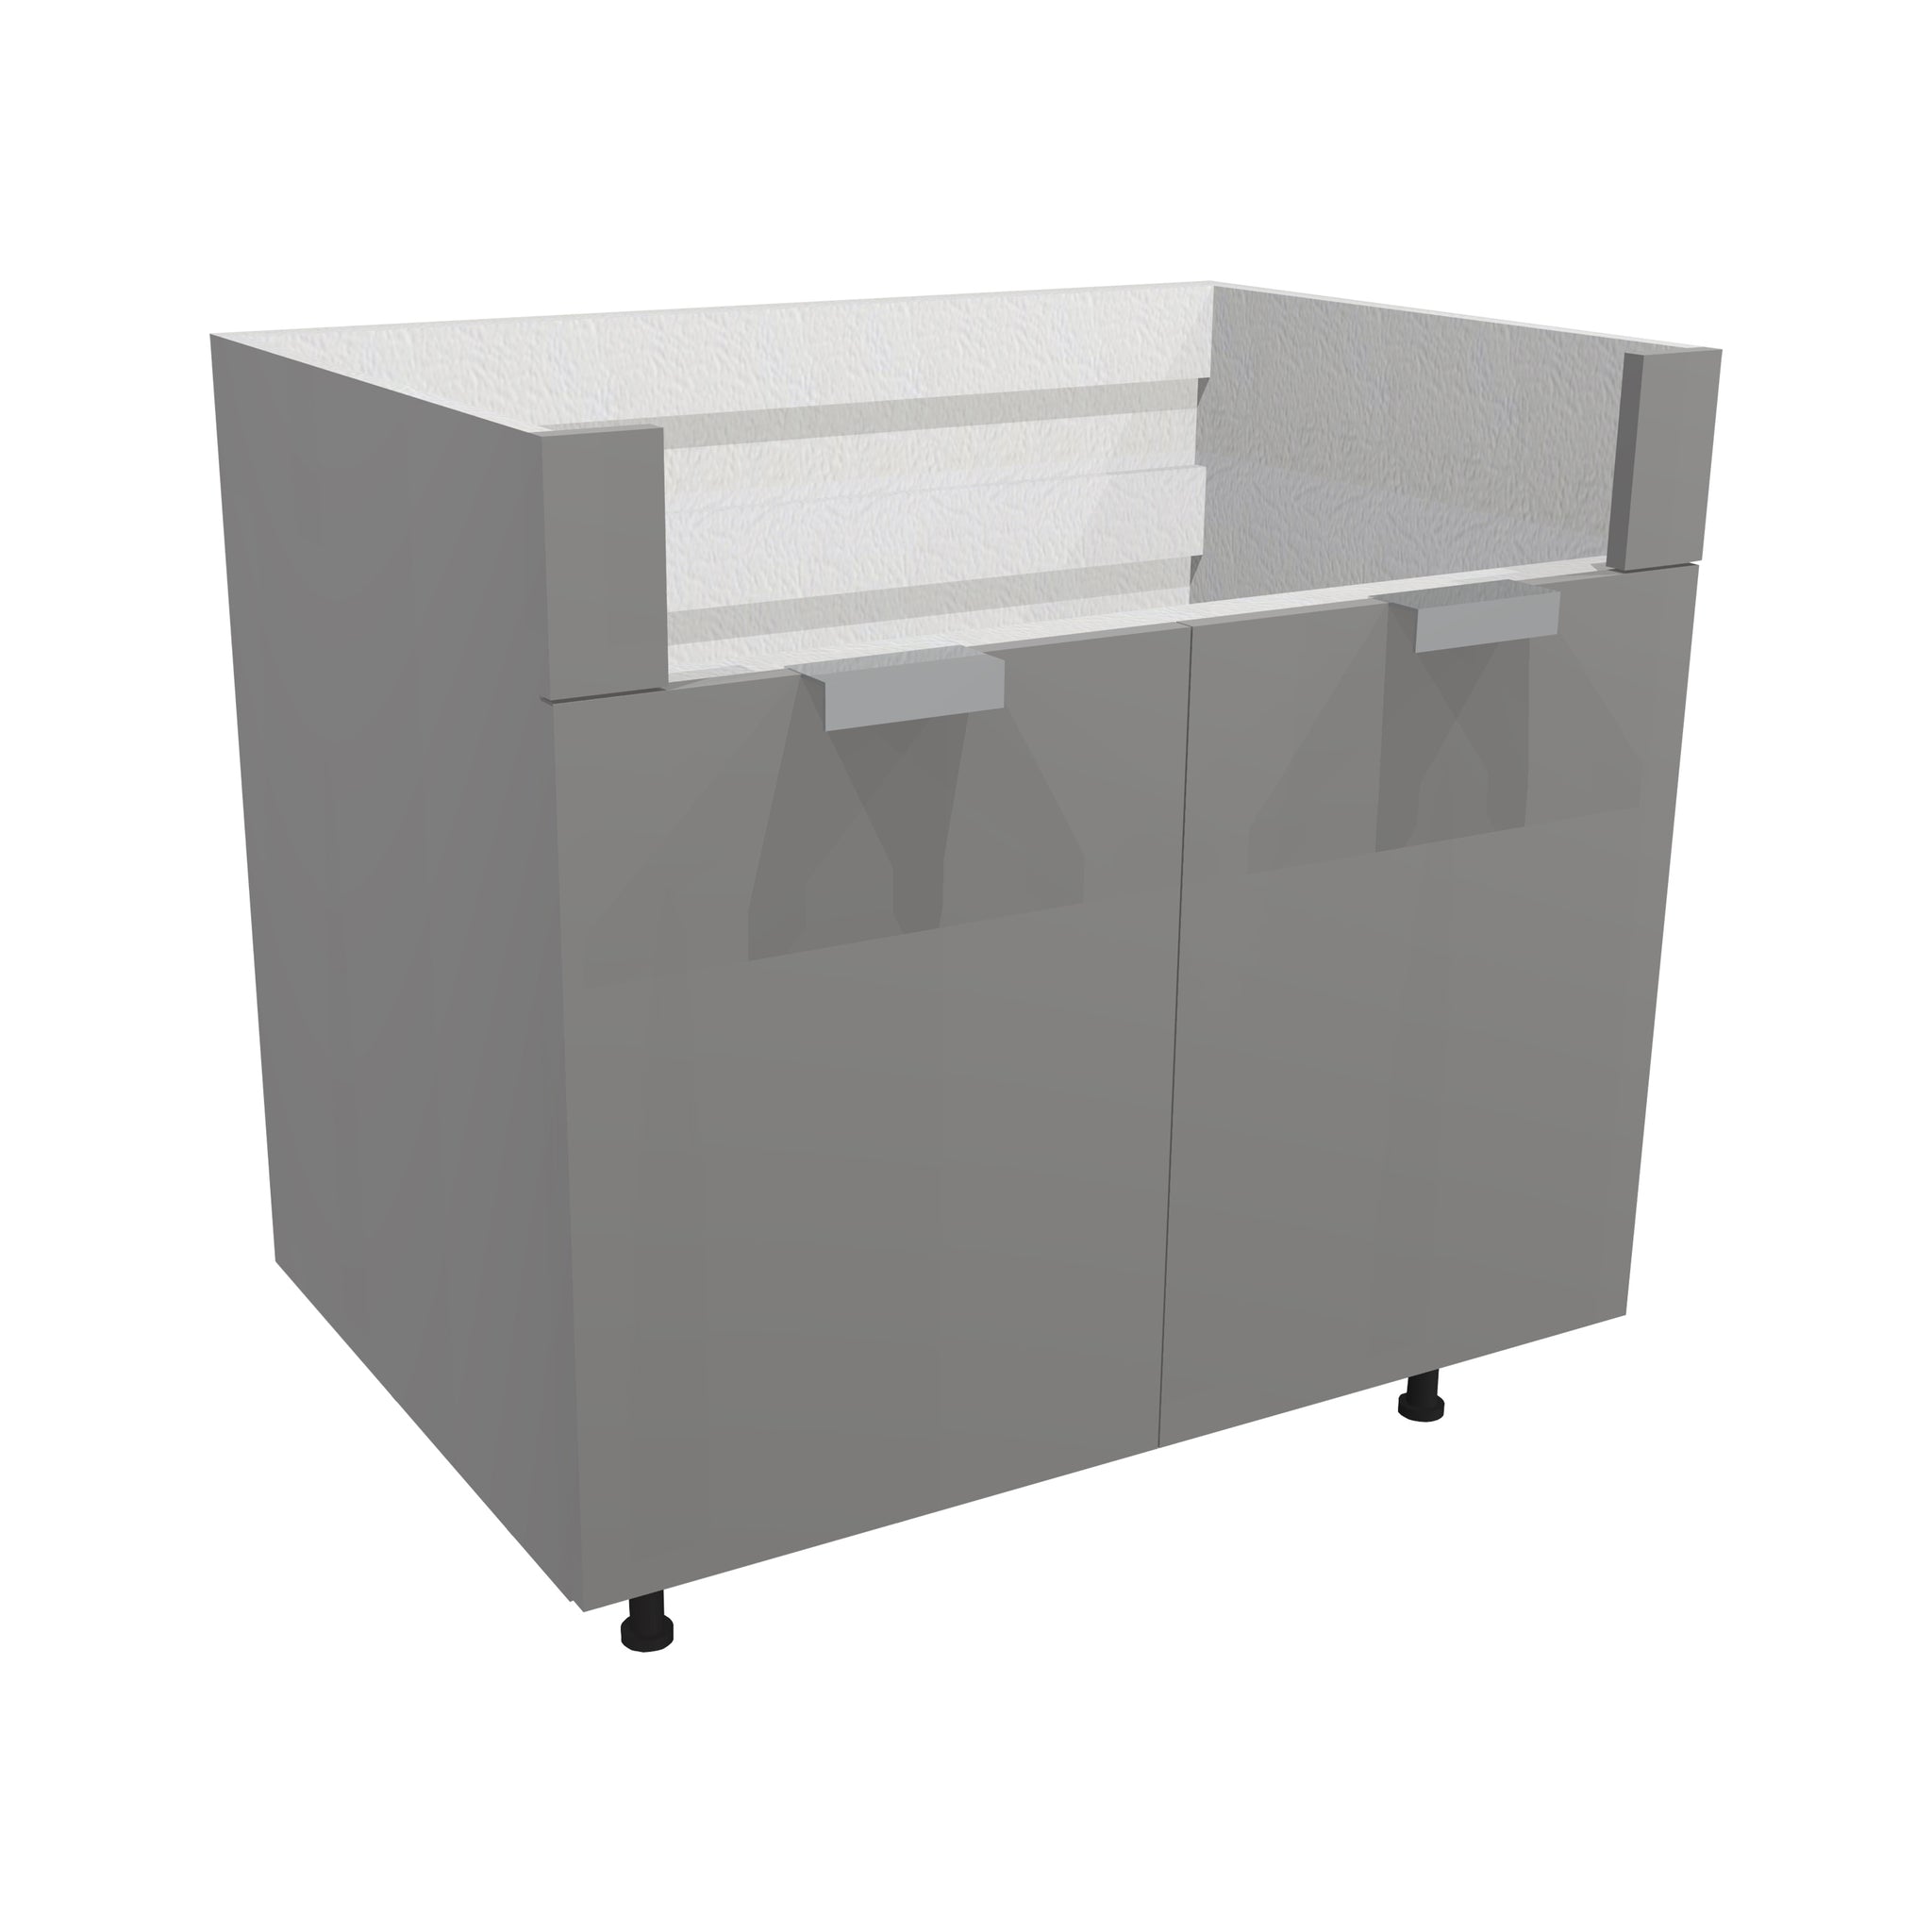 RTA - Glossy Grey - Farm Sink Base Cabinet | 30"W x 30"H x 23.8"D